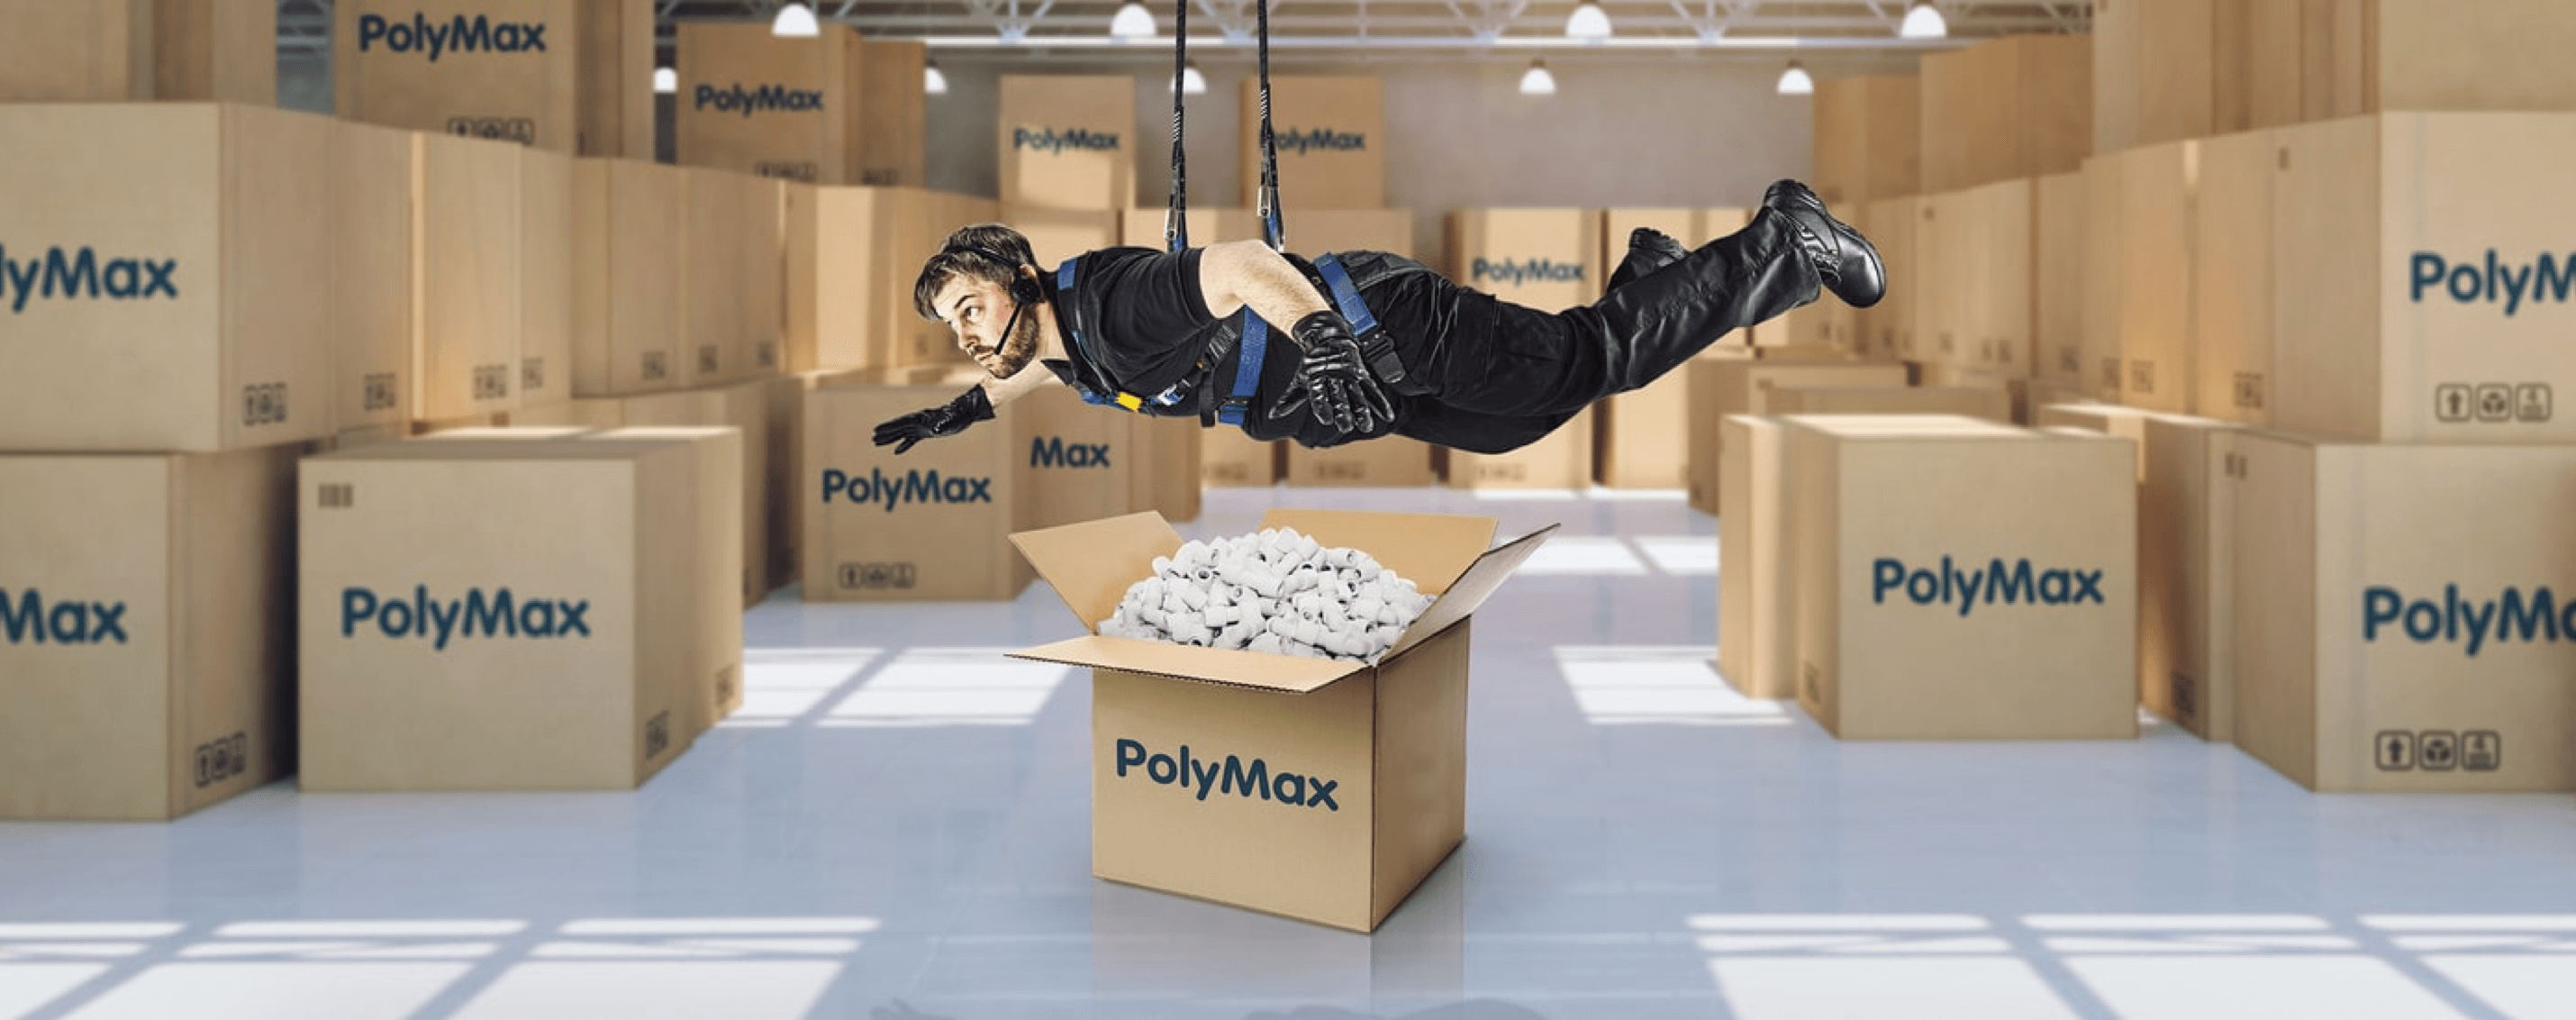 Polymax 2